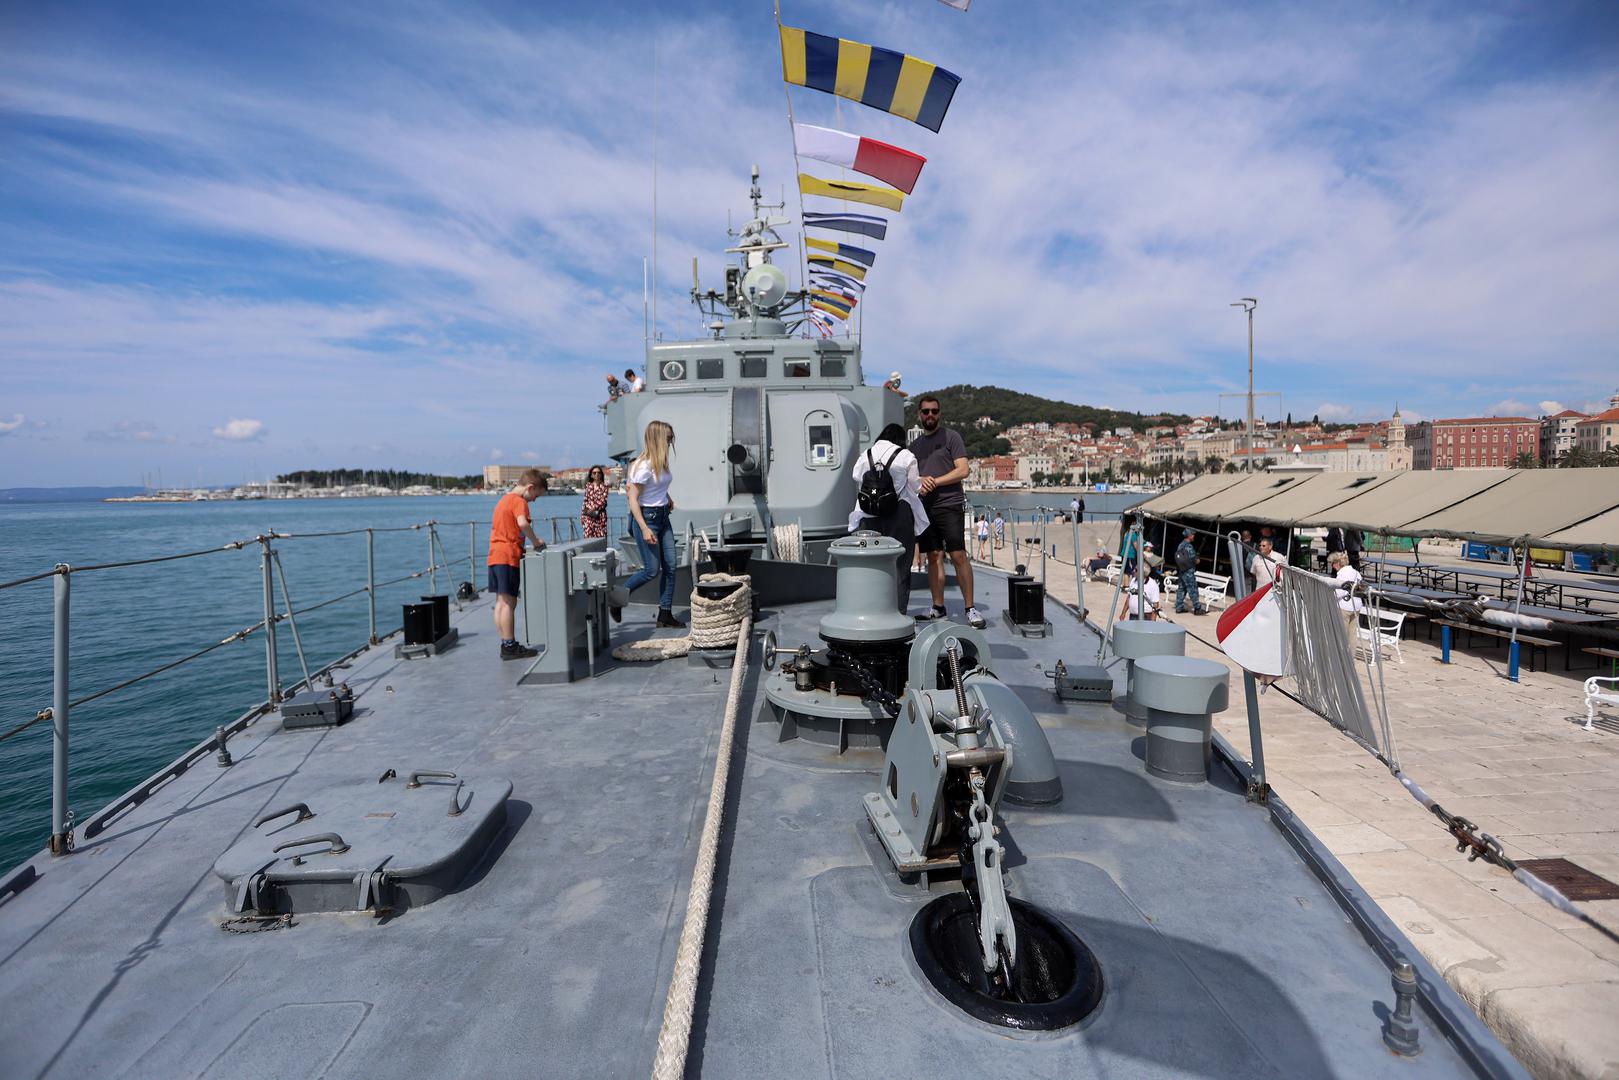 Na gatu sv. Nikole u Splitu su izložena danas dva broda Hrvatske ratne mornarice - Petar Krešimir IV. i Omiš.
